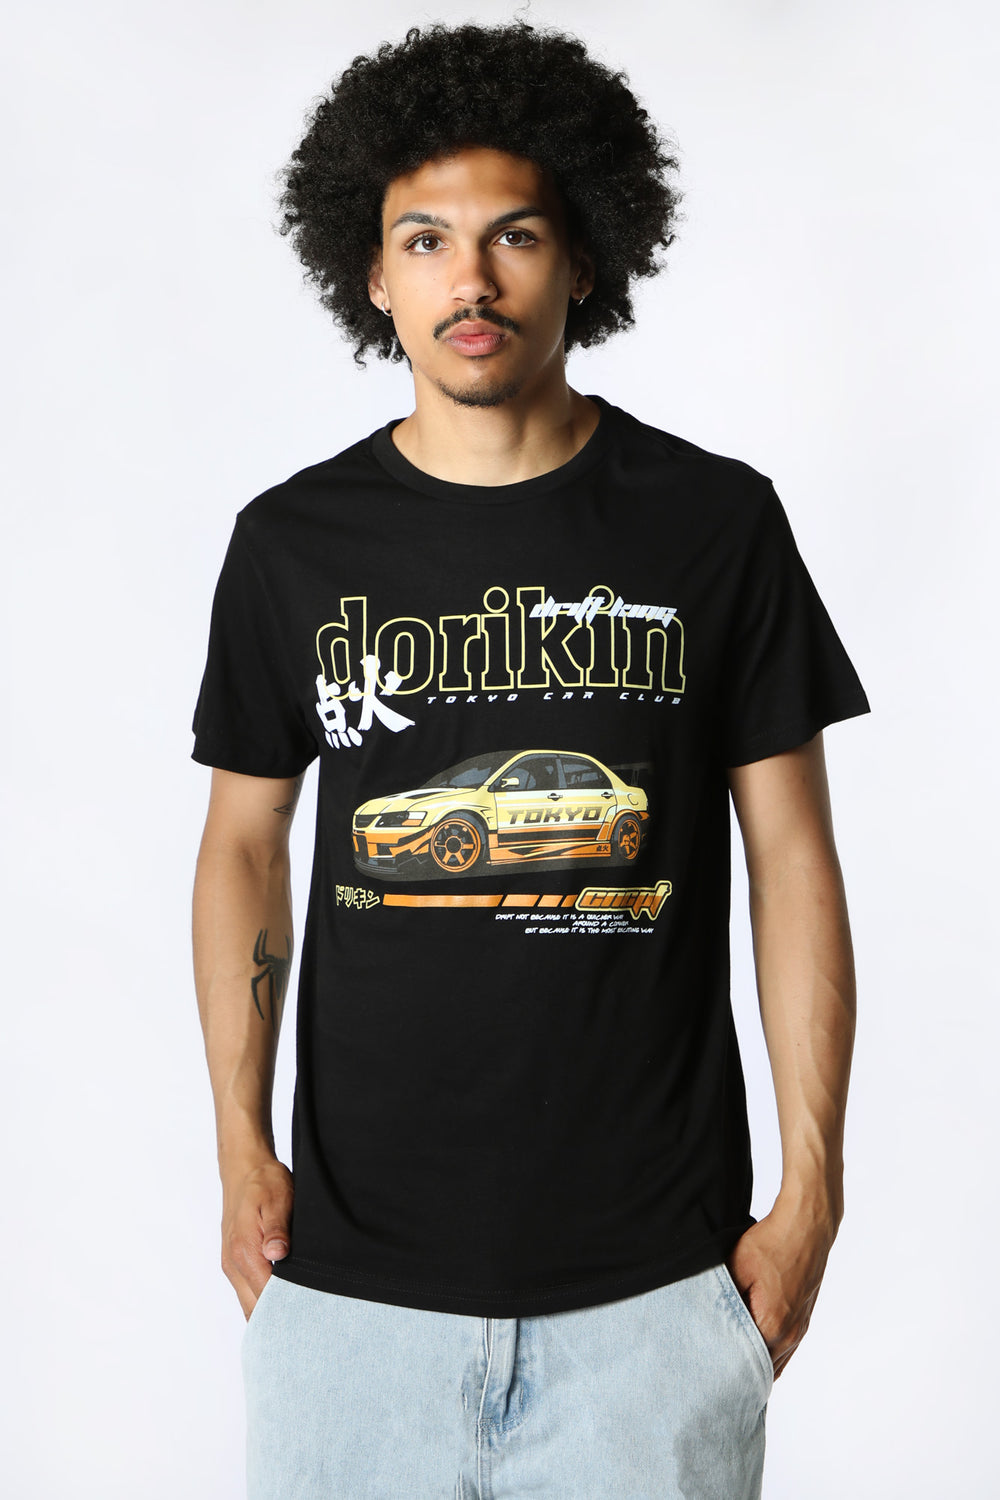 T-Shirt Imprimé Drift King West49 Homme Noir